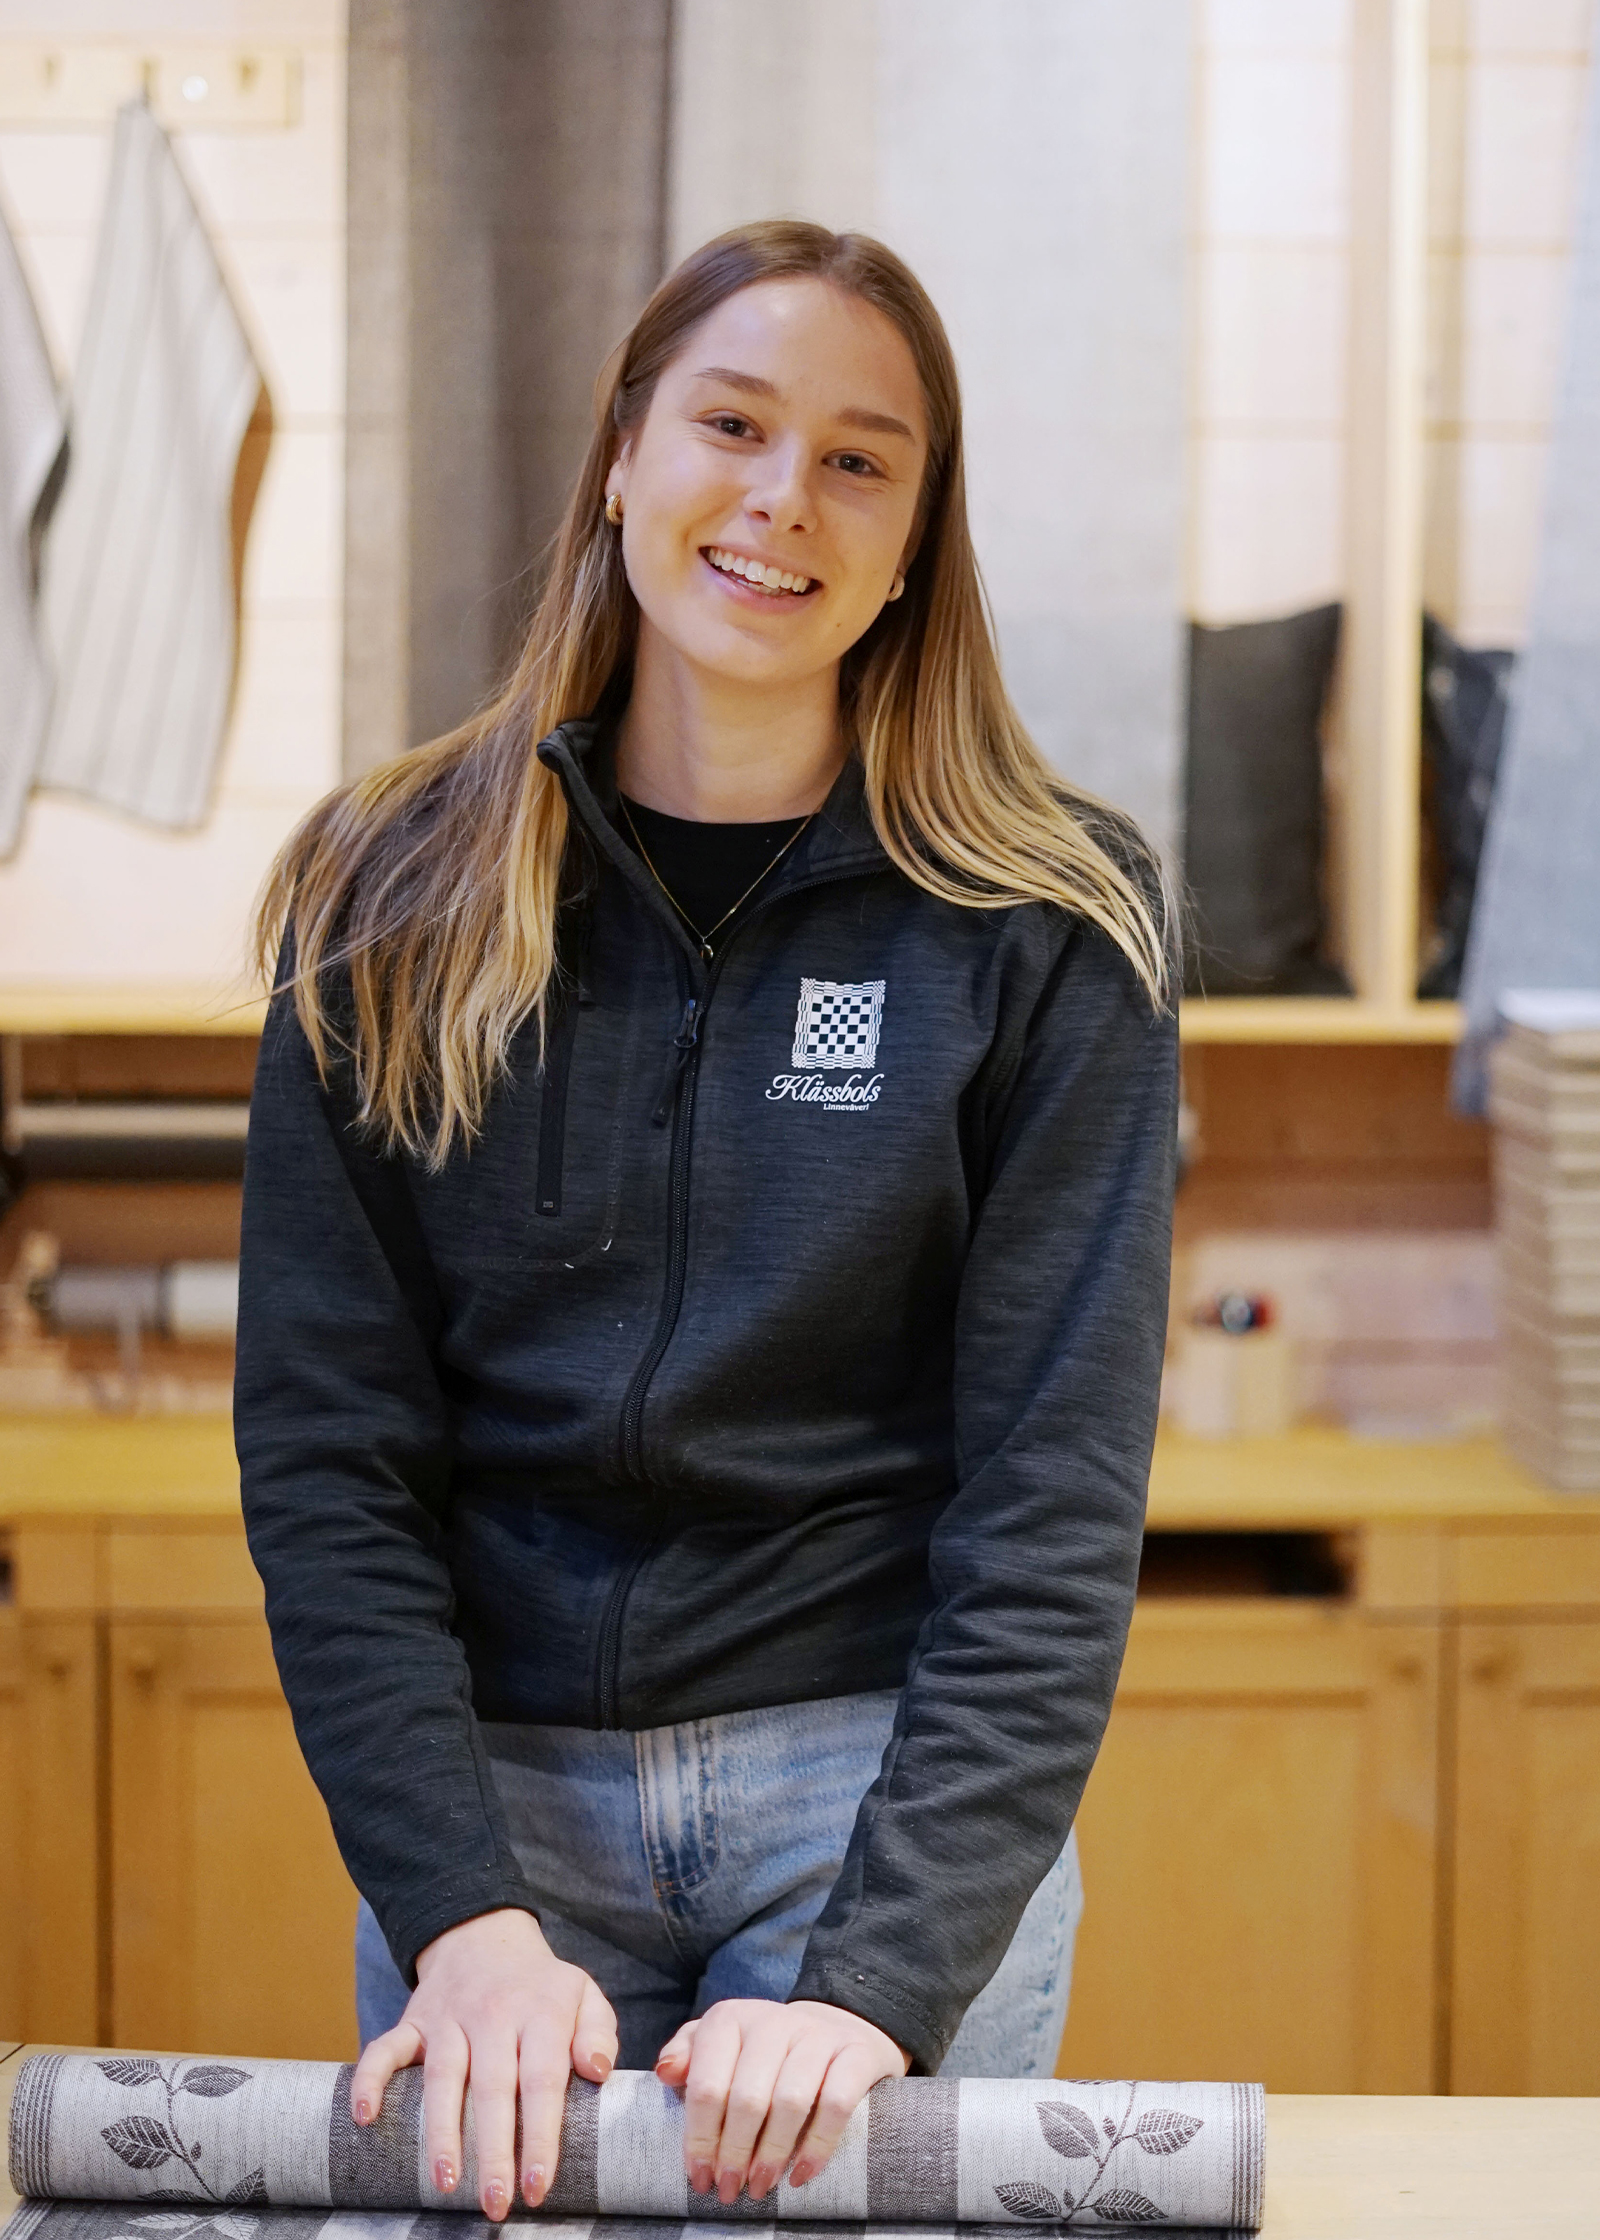 Irma Åsen shop assistant in Klässbol and quality at Klässbol&#39;s Linneväveri